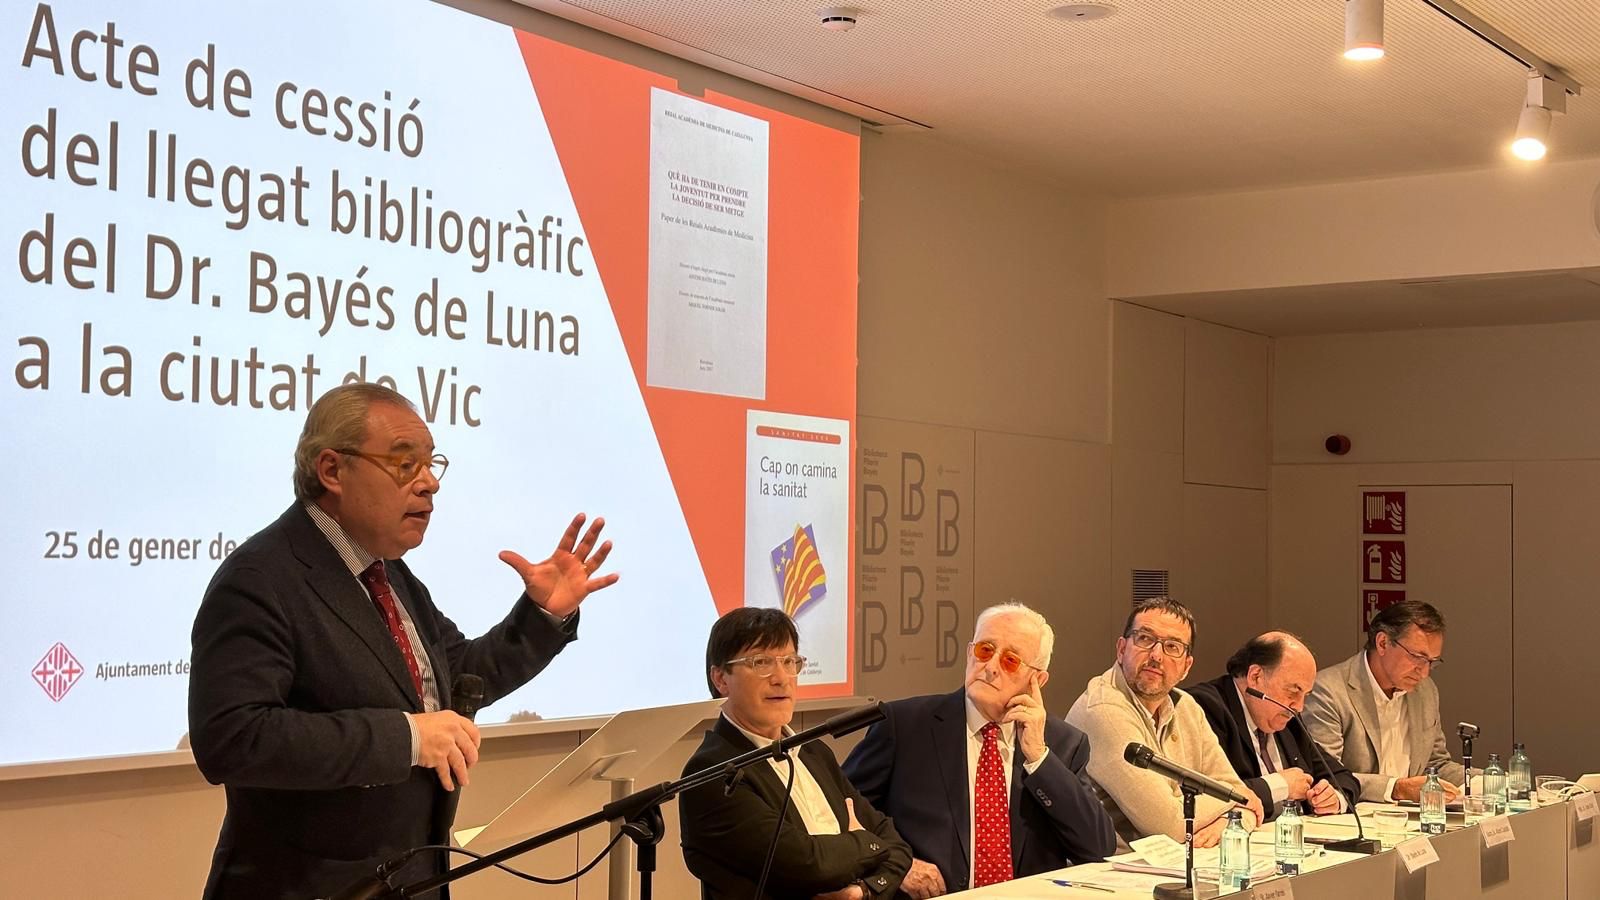 Intervenció de Josep Arimany en la cessió del fons bibliogràfic d'Antoni Bayés